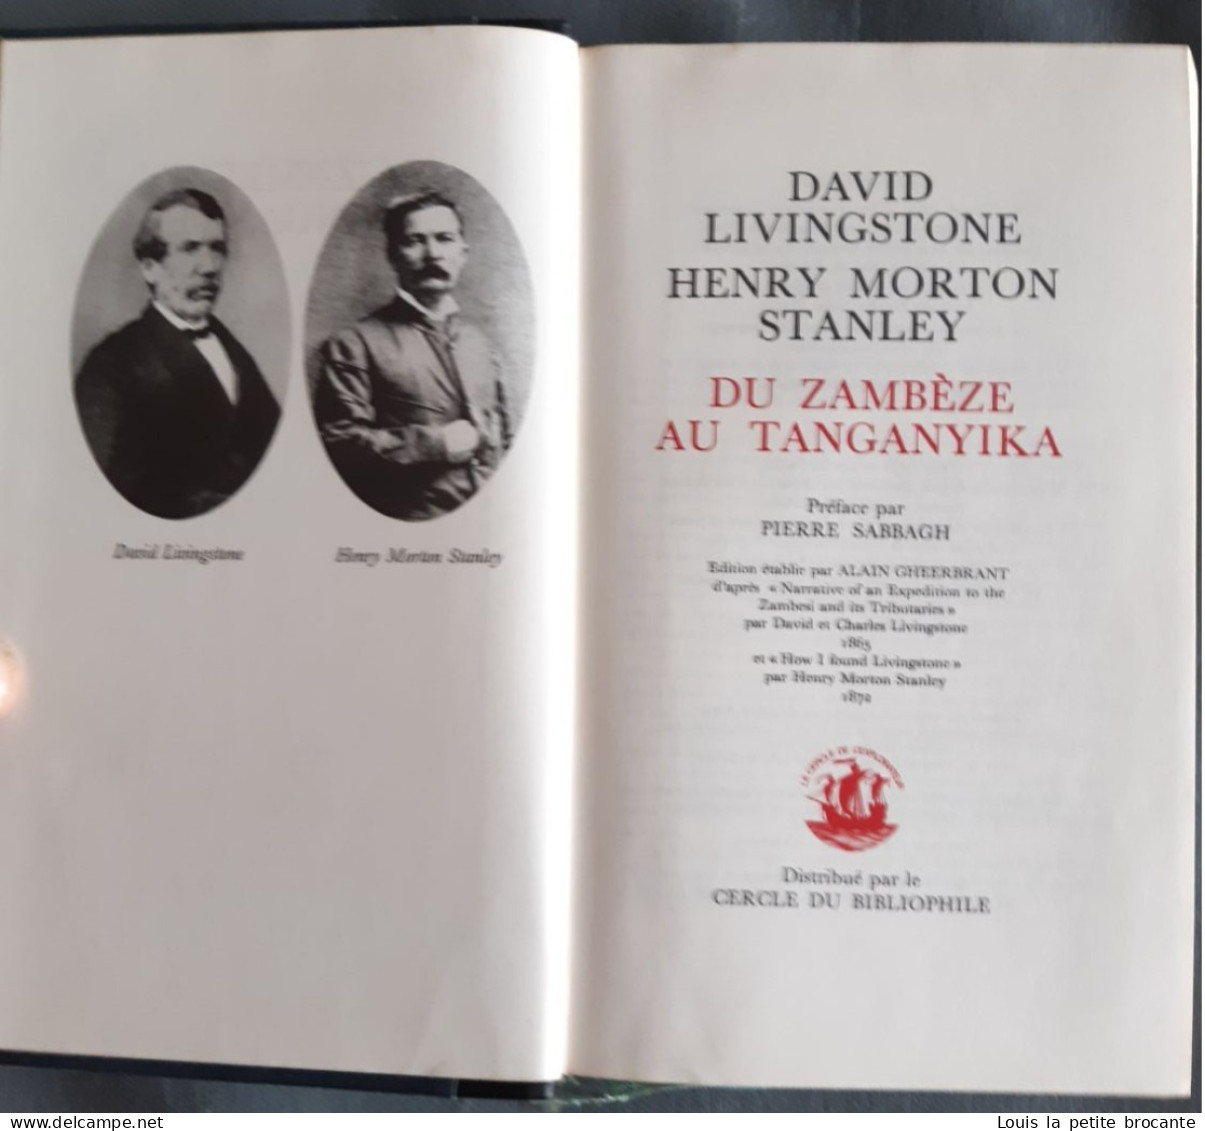 lot de 21 livres sur les explorateusr et aventuriers, éditions Edito Service S.A. Genève.